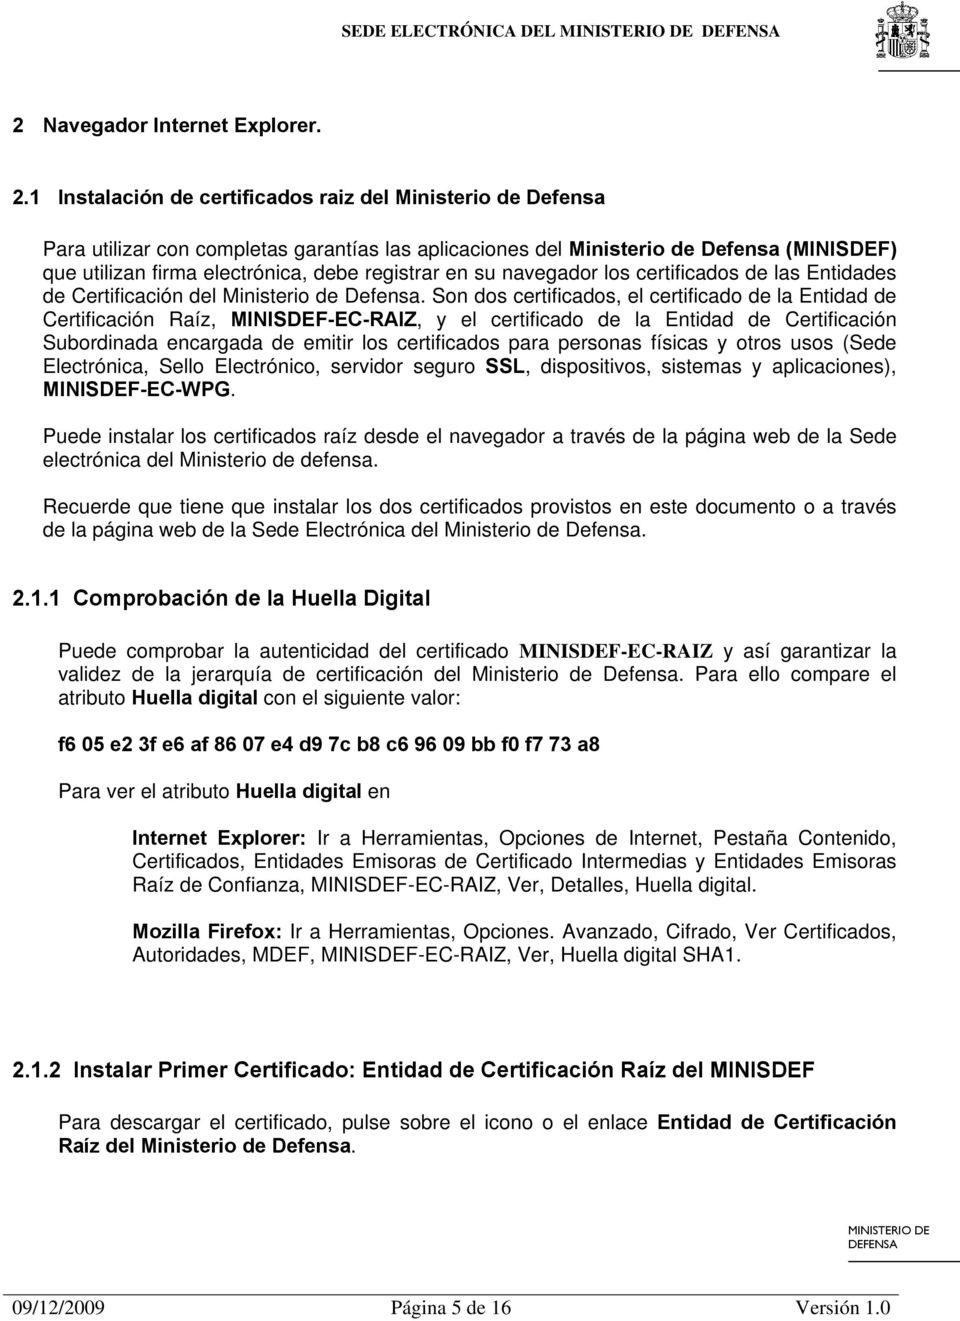 1 Instalación de certificados raiz del Ministerio de Defensa Para utilizar con completas garantías las aplicaciones del Ministerio de Defensa (MINISDEF) que utilizan firma electrónica, debe registrar